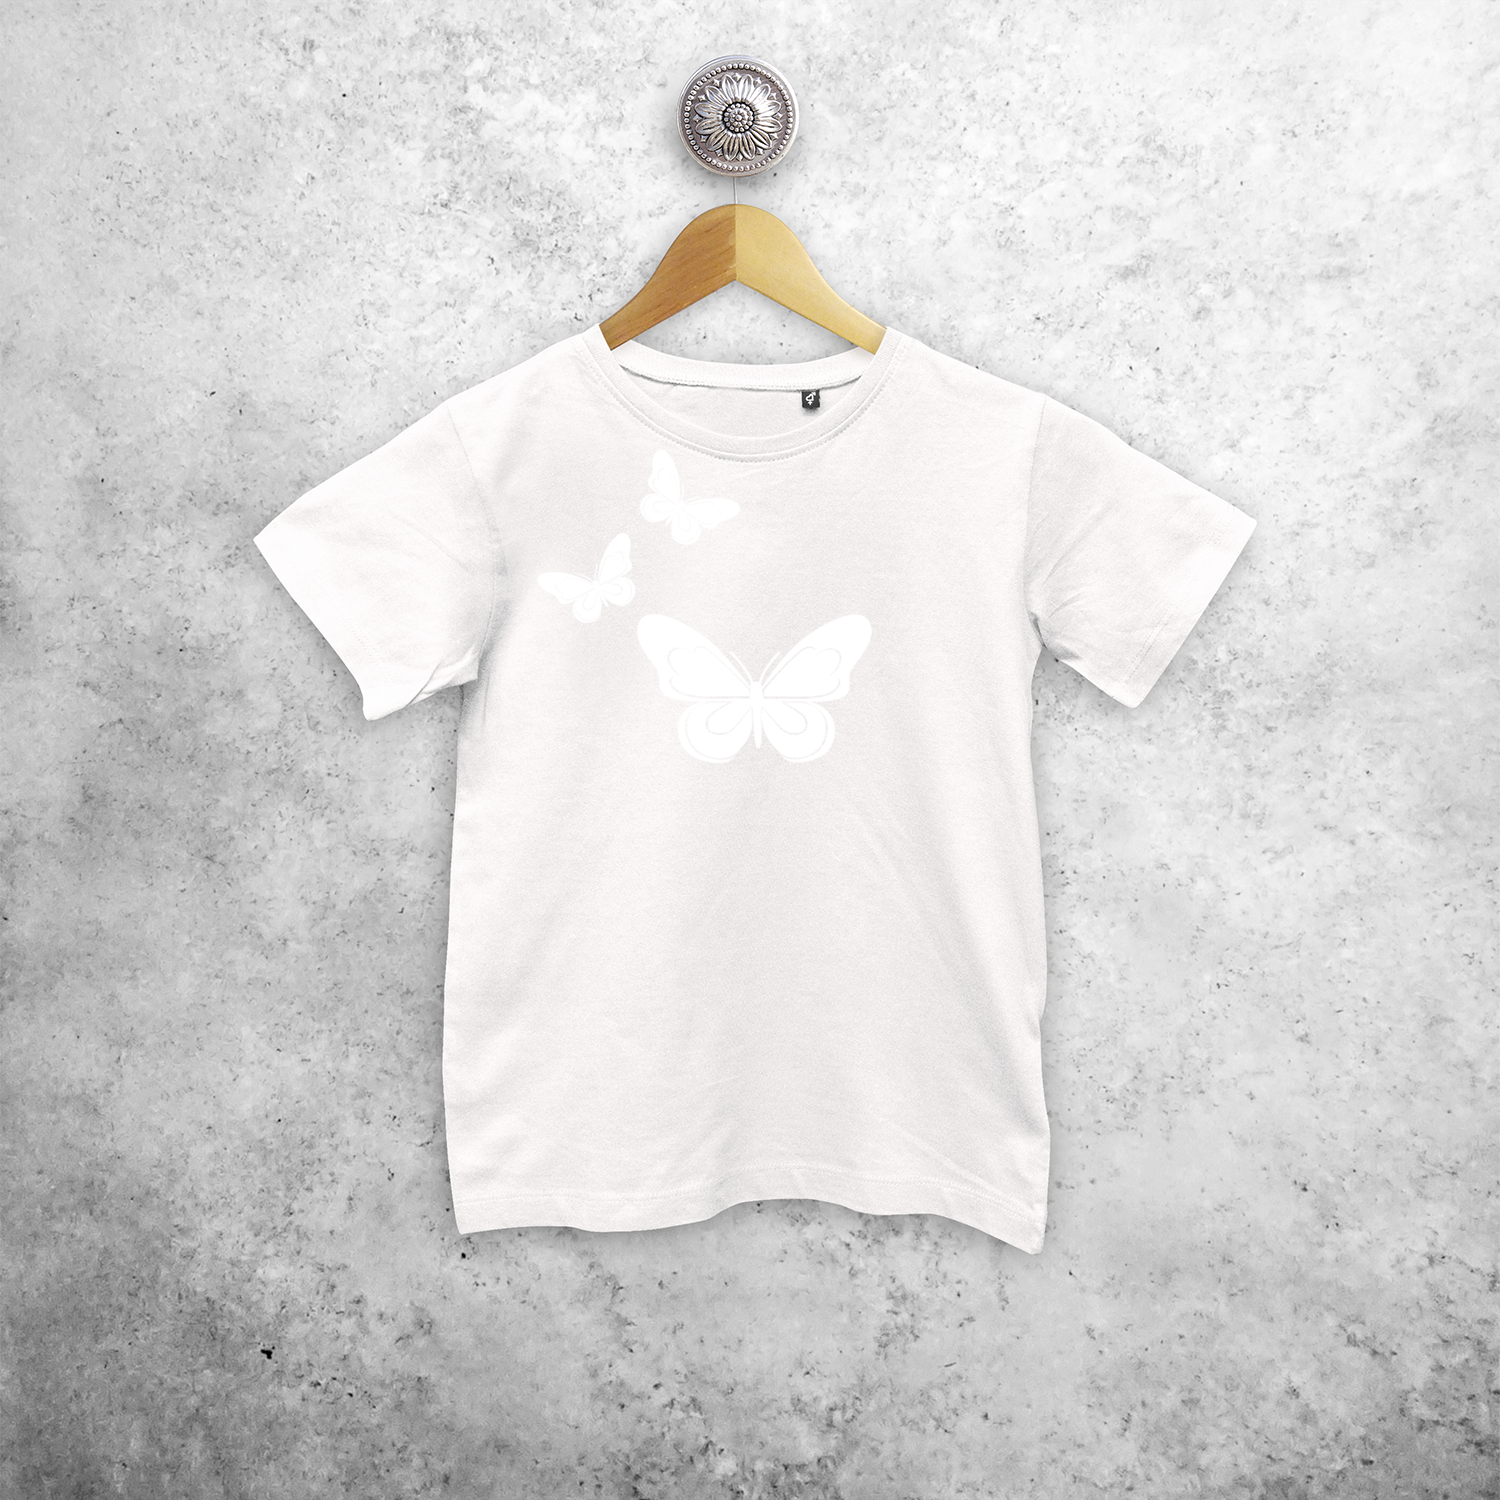 Butterflies magic kids shortsleeve shirt